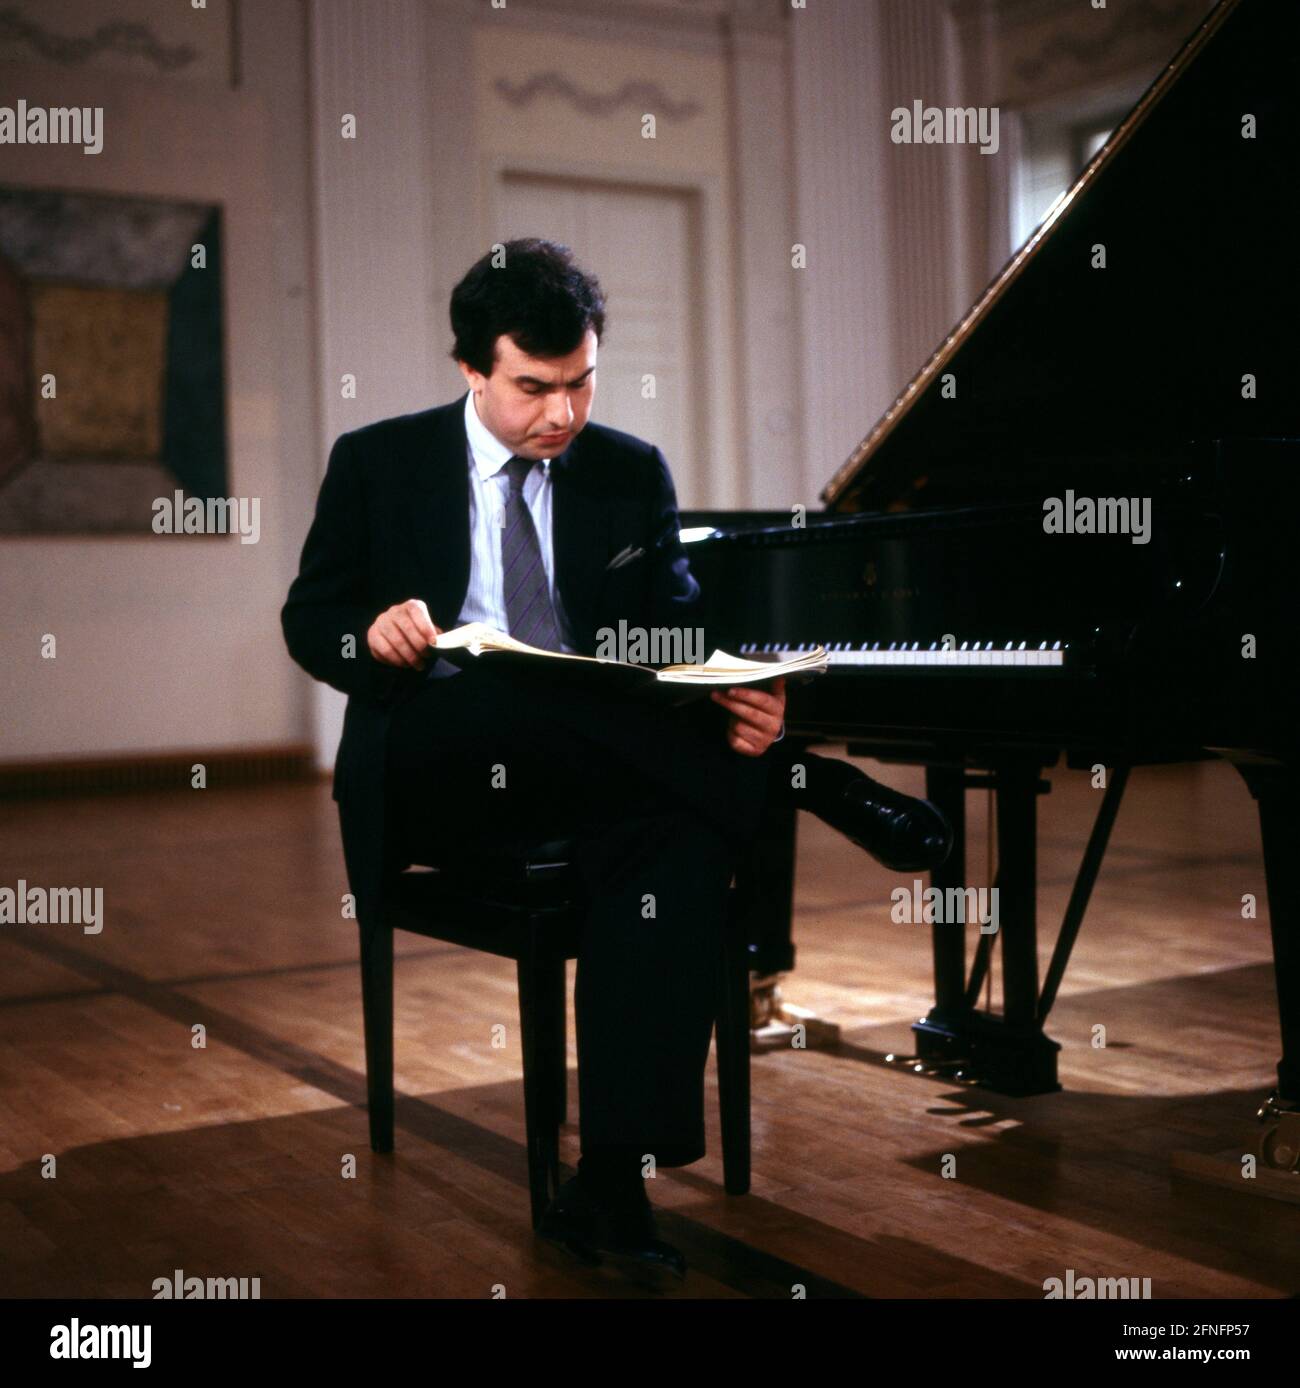 Yefim Bronfman, geboren in Usbekistan, amerikanisch-israelischer Pianist, am Flügel, 1987. Yefim Bronfman, born in Uzbekistan, American-Israeli pianist, on the Grand piano, 1987. Stock Photo